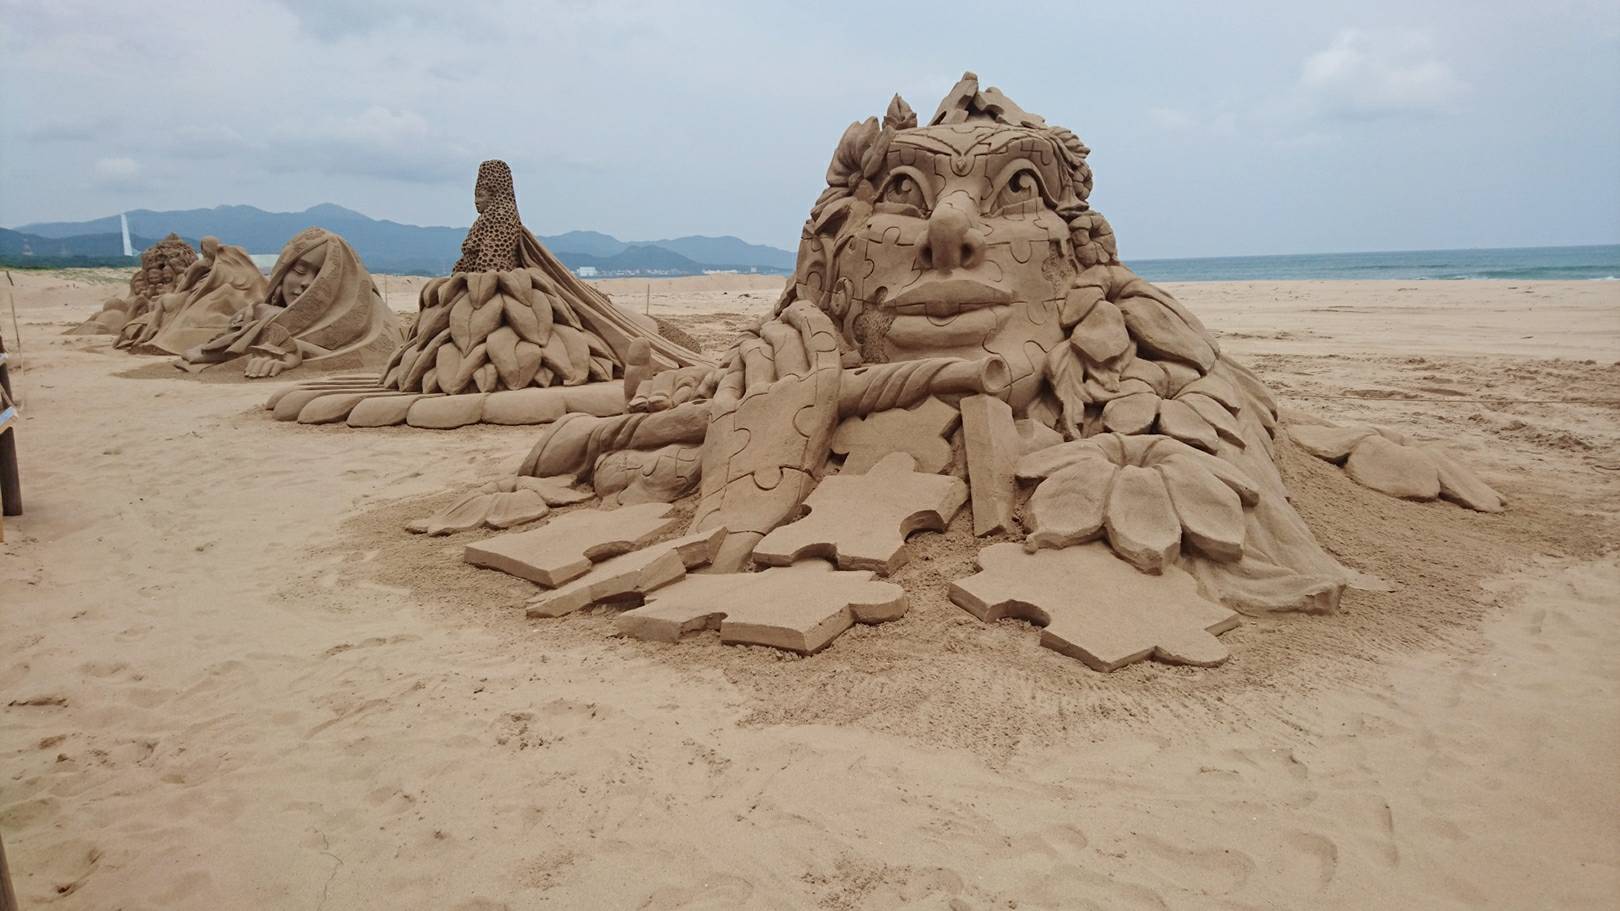 Tác phẩm đầu tiên - "Cảm hứng" của nhà điêu khắc cát người Bỉ Irina Sokolova